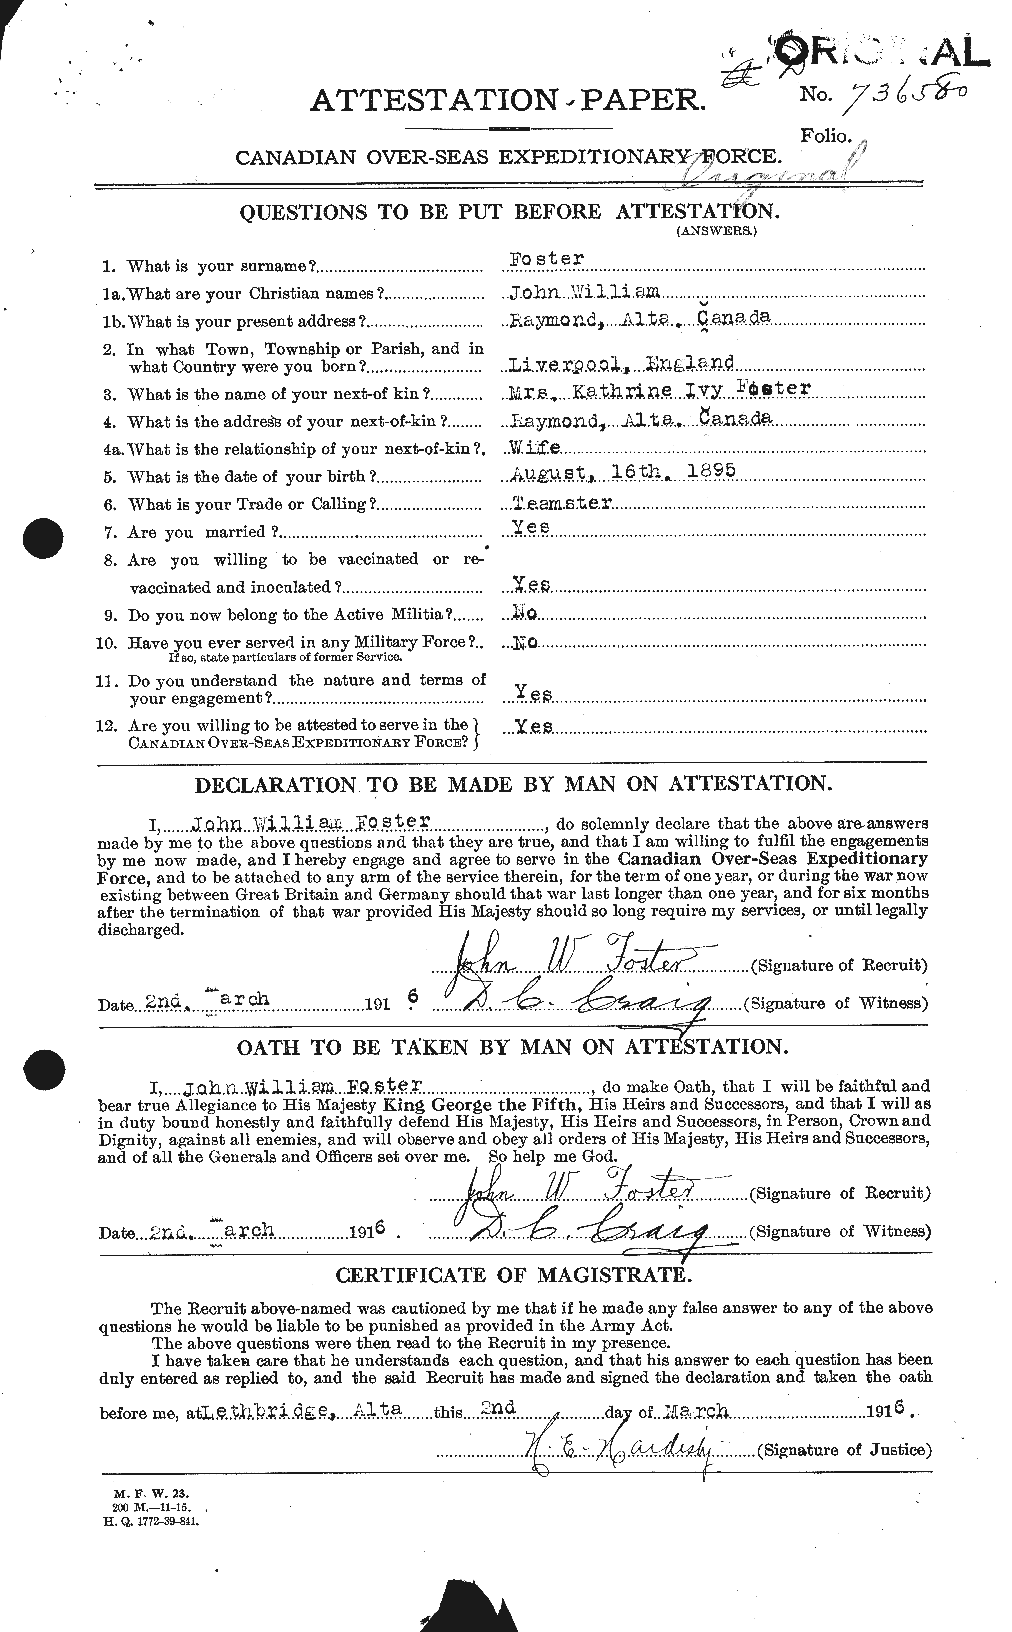 Dossiers du Personnel de la Première Guerre mondiale - CEC 333373a